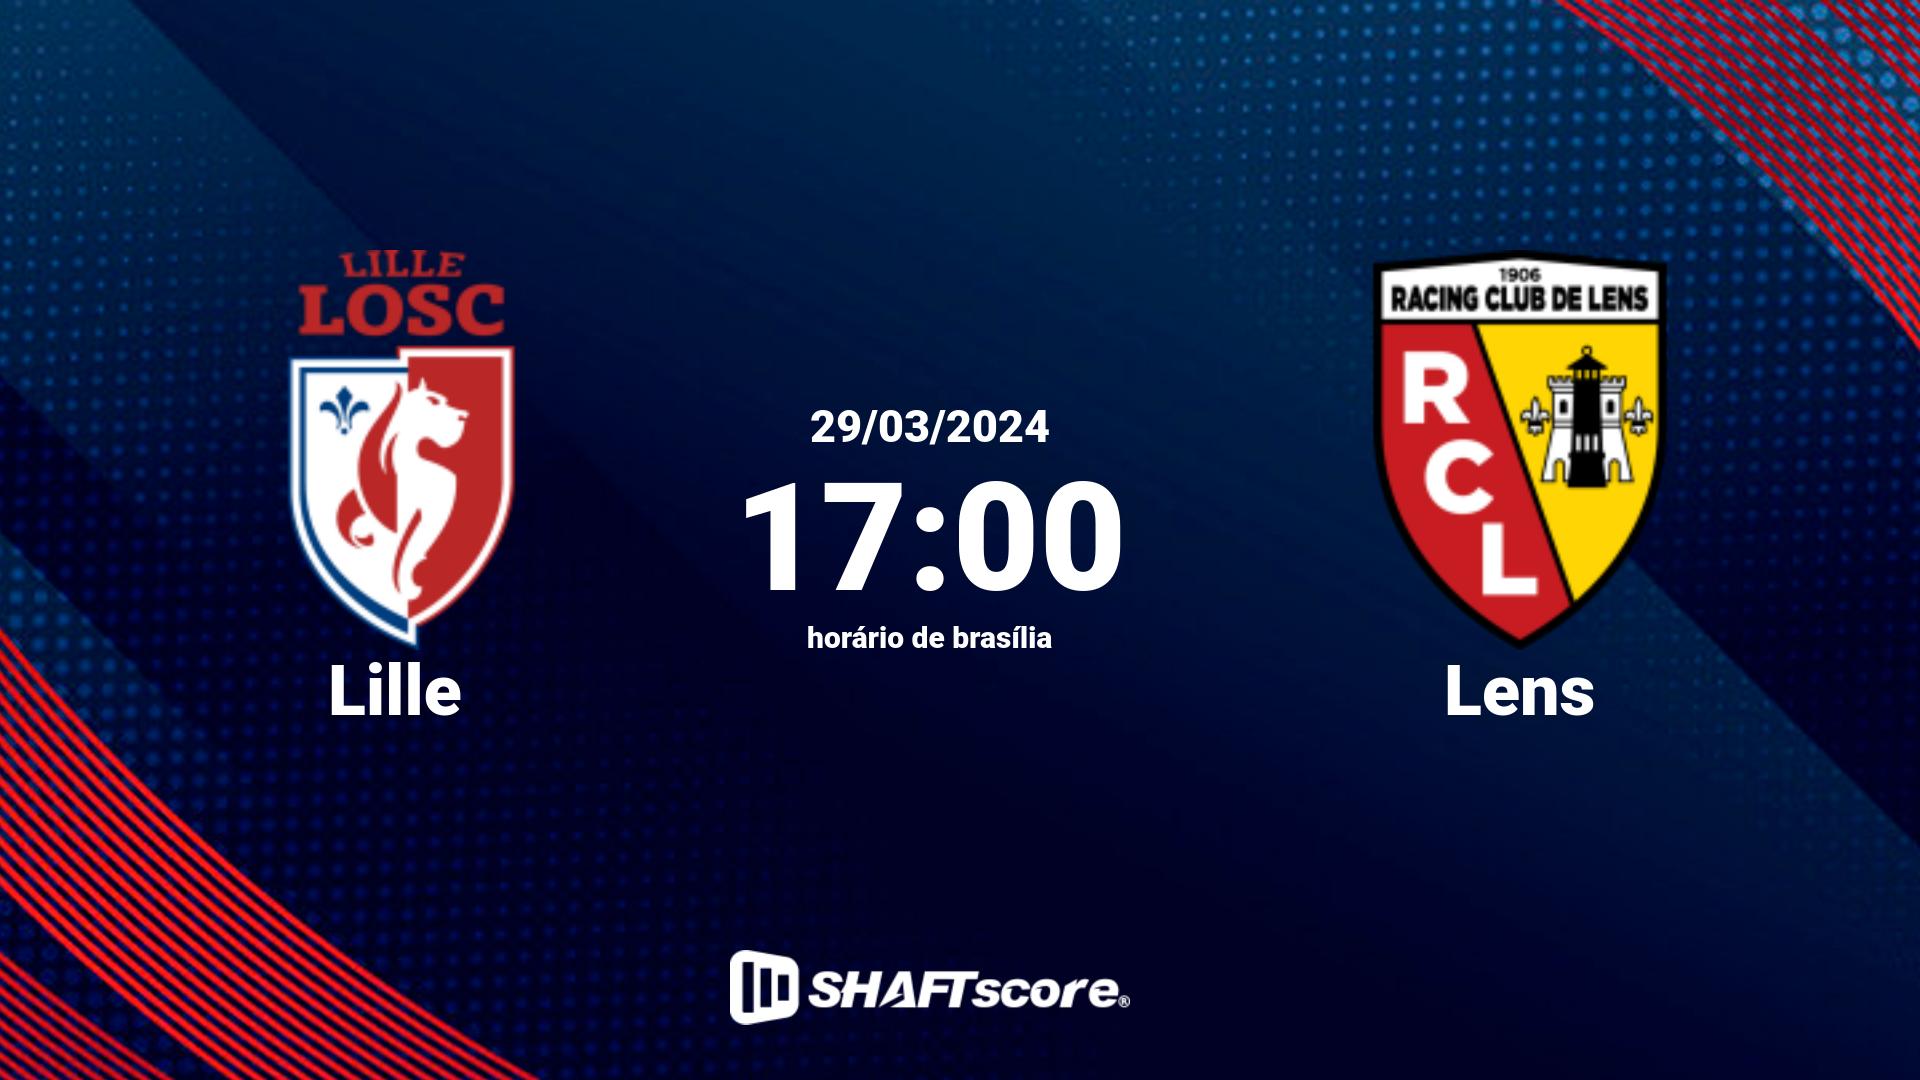 Estatísticas do jogo Lille vs Lens 29.03 17:00